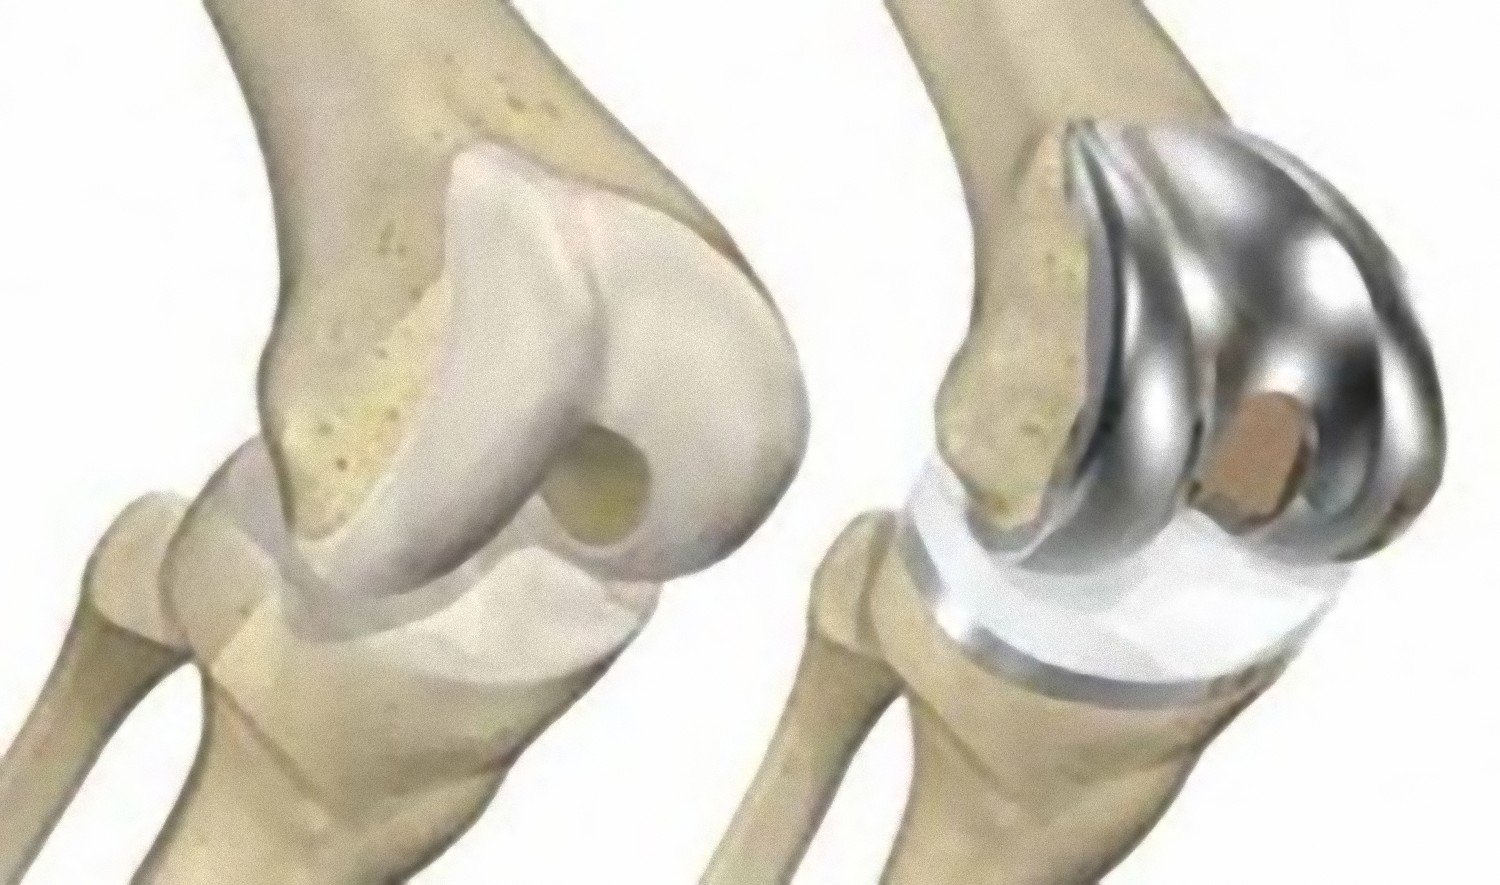 Эндопротезирование коленного сустава клиника. Артропластика коленного сустава. Maxx Orthopedic эндопротез коленного. Артропластика тазобедренного сустава. Тотальное эндопротезирование коленного сустава.